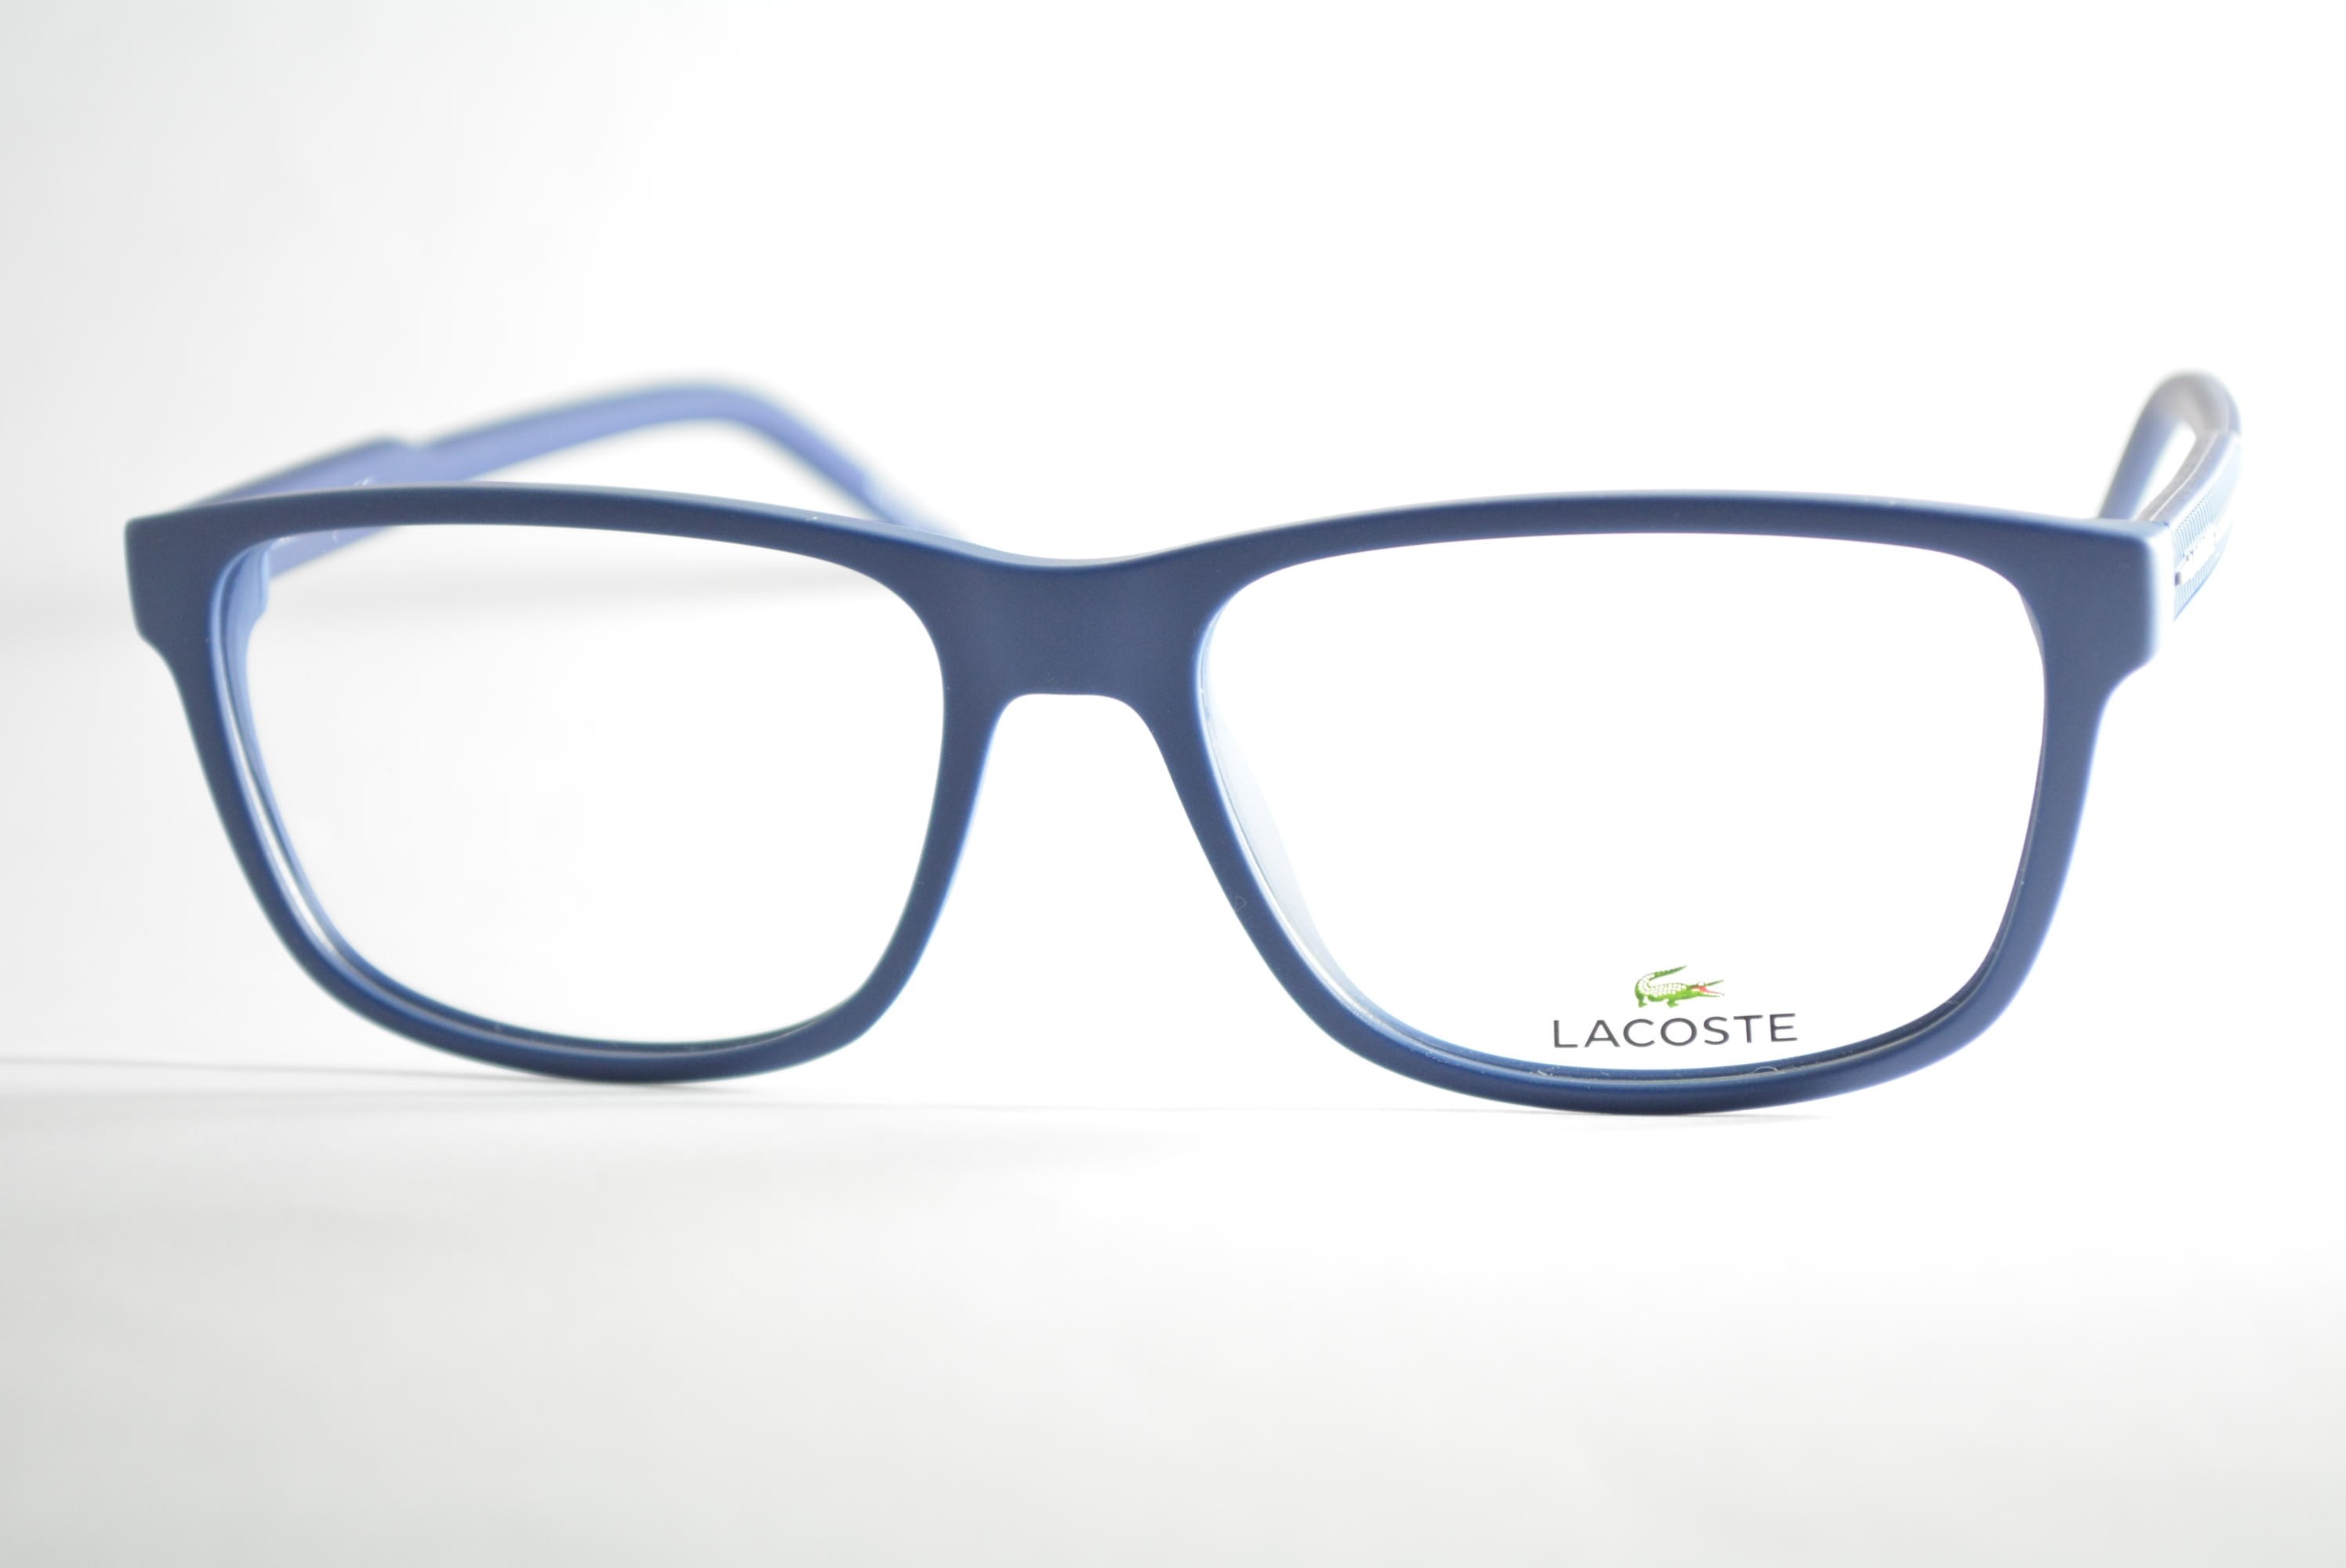 armação de óculos Lacoste mod L2866 424